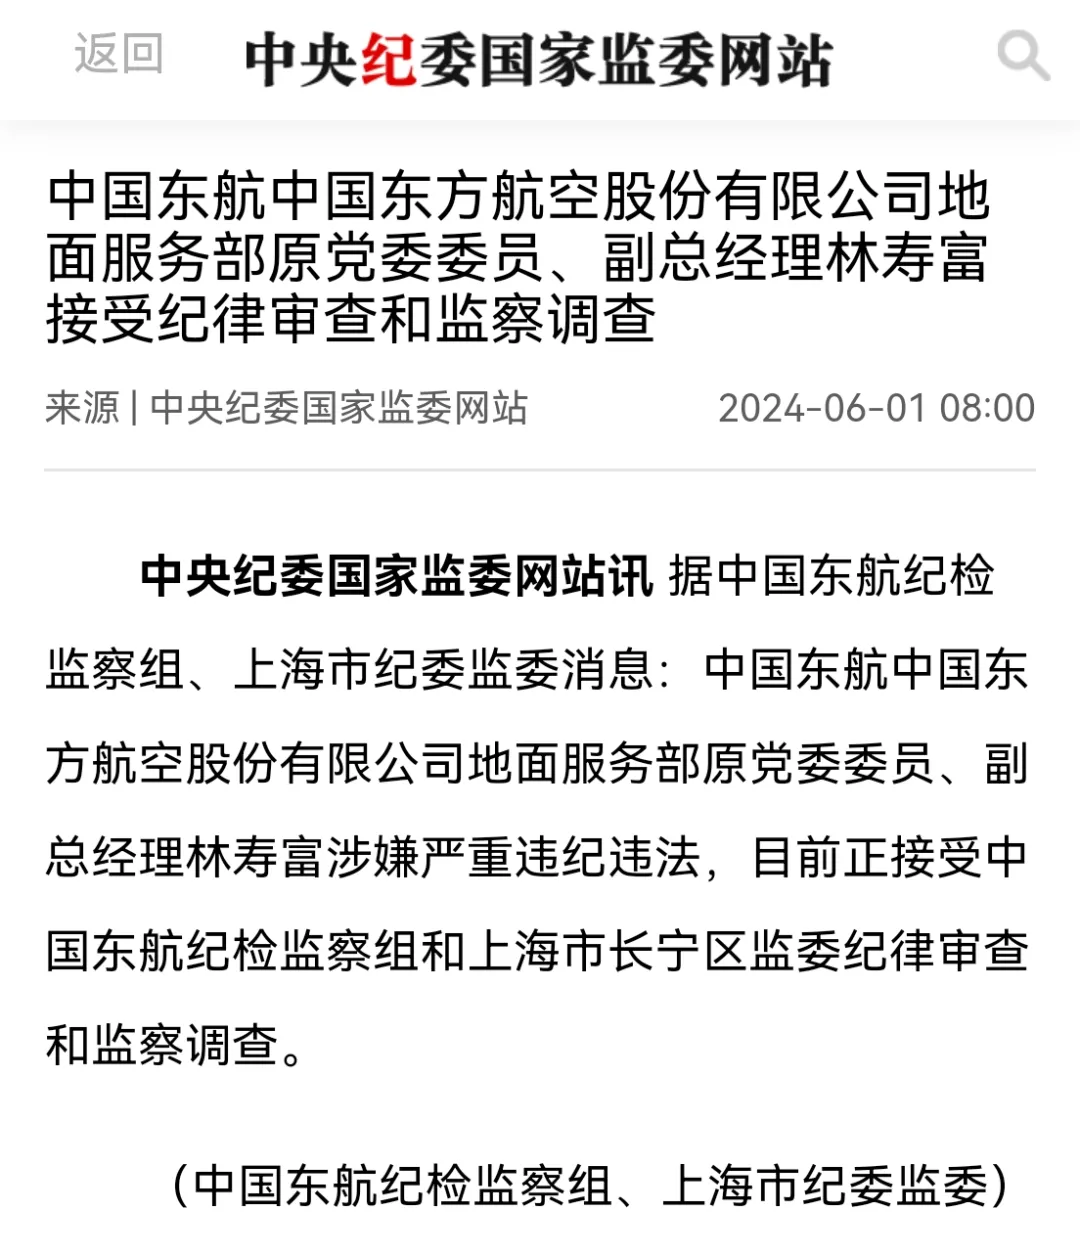 东航股份地面服务部原副总经理林寿富接受审查调查